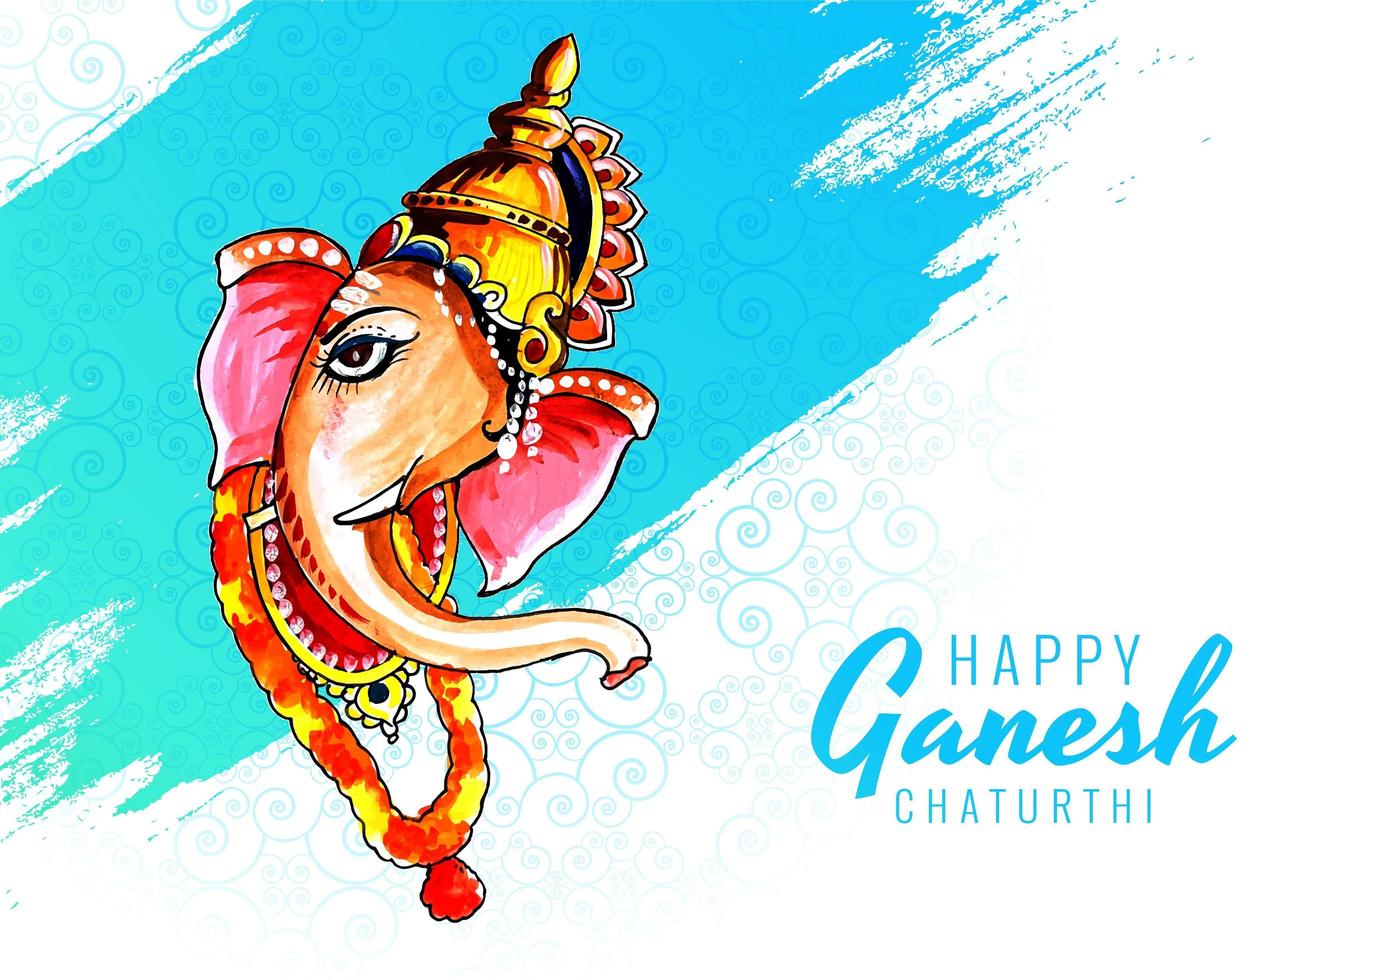 Perfil do Senhor Ganesha para o fundo do festival Ganesh Chaturthi vetor